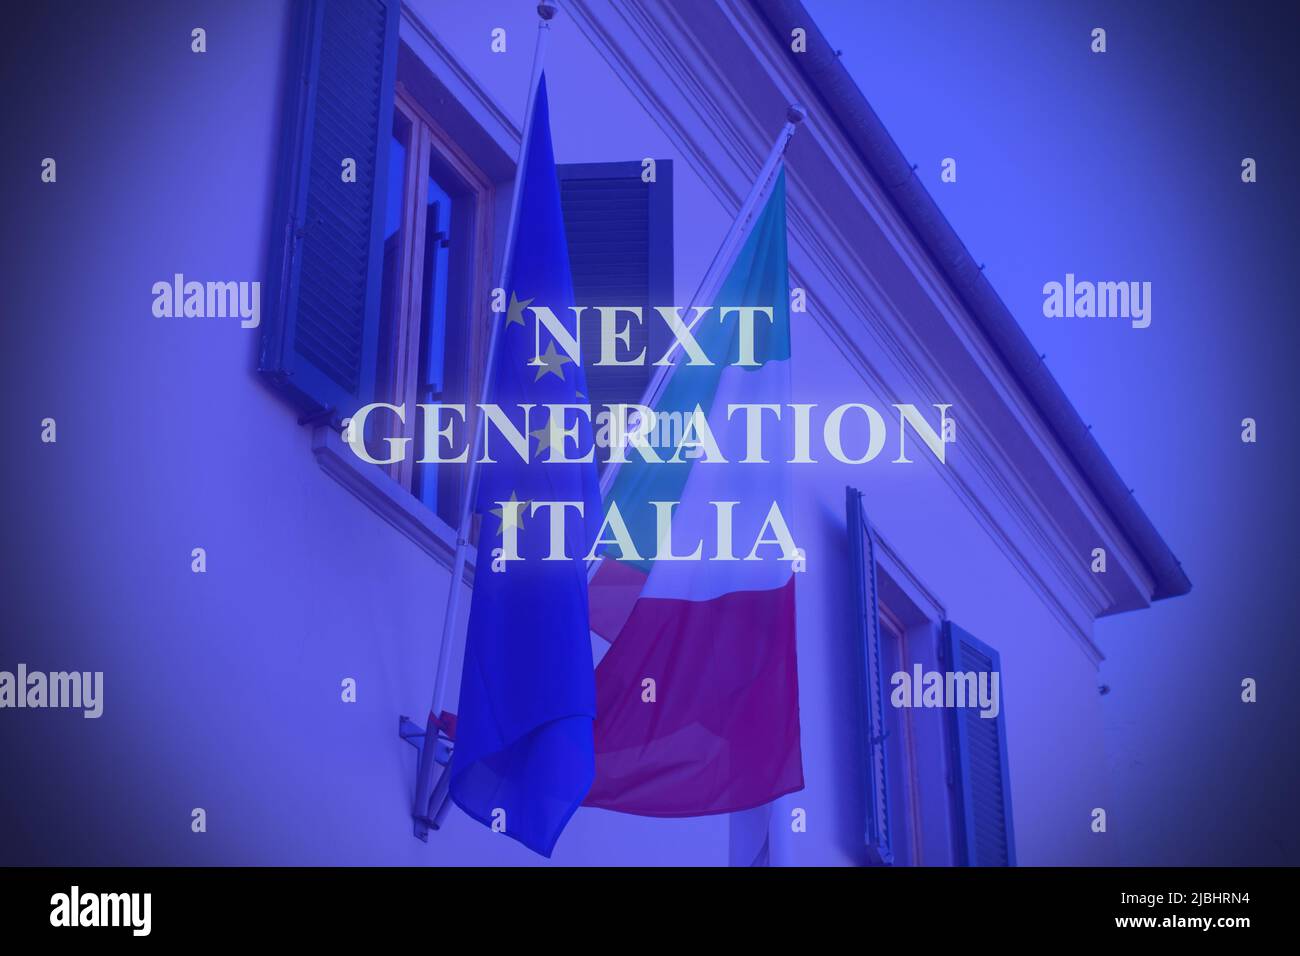 Prise de vue des drapeaux italiens et européens en Italie avec le texte « Next Generation Italia » Banque D'Images